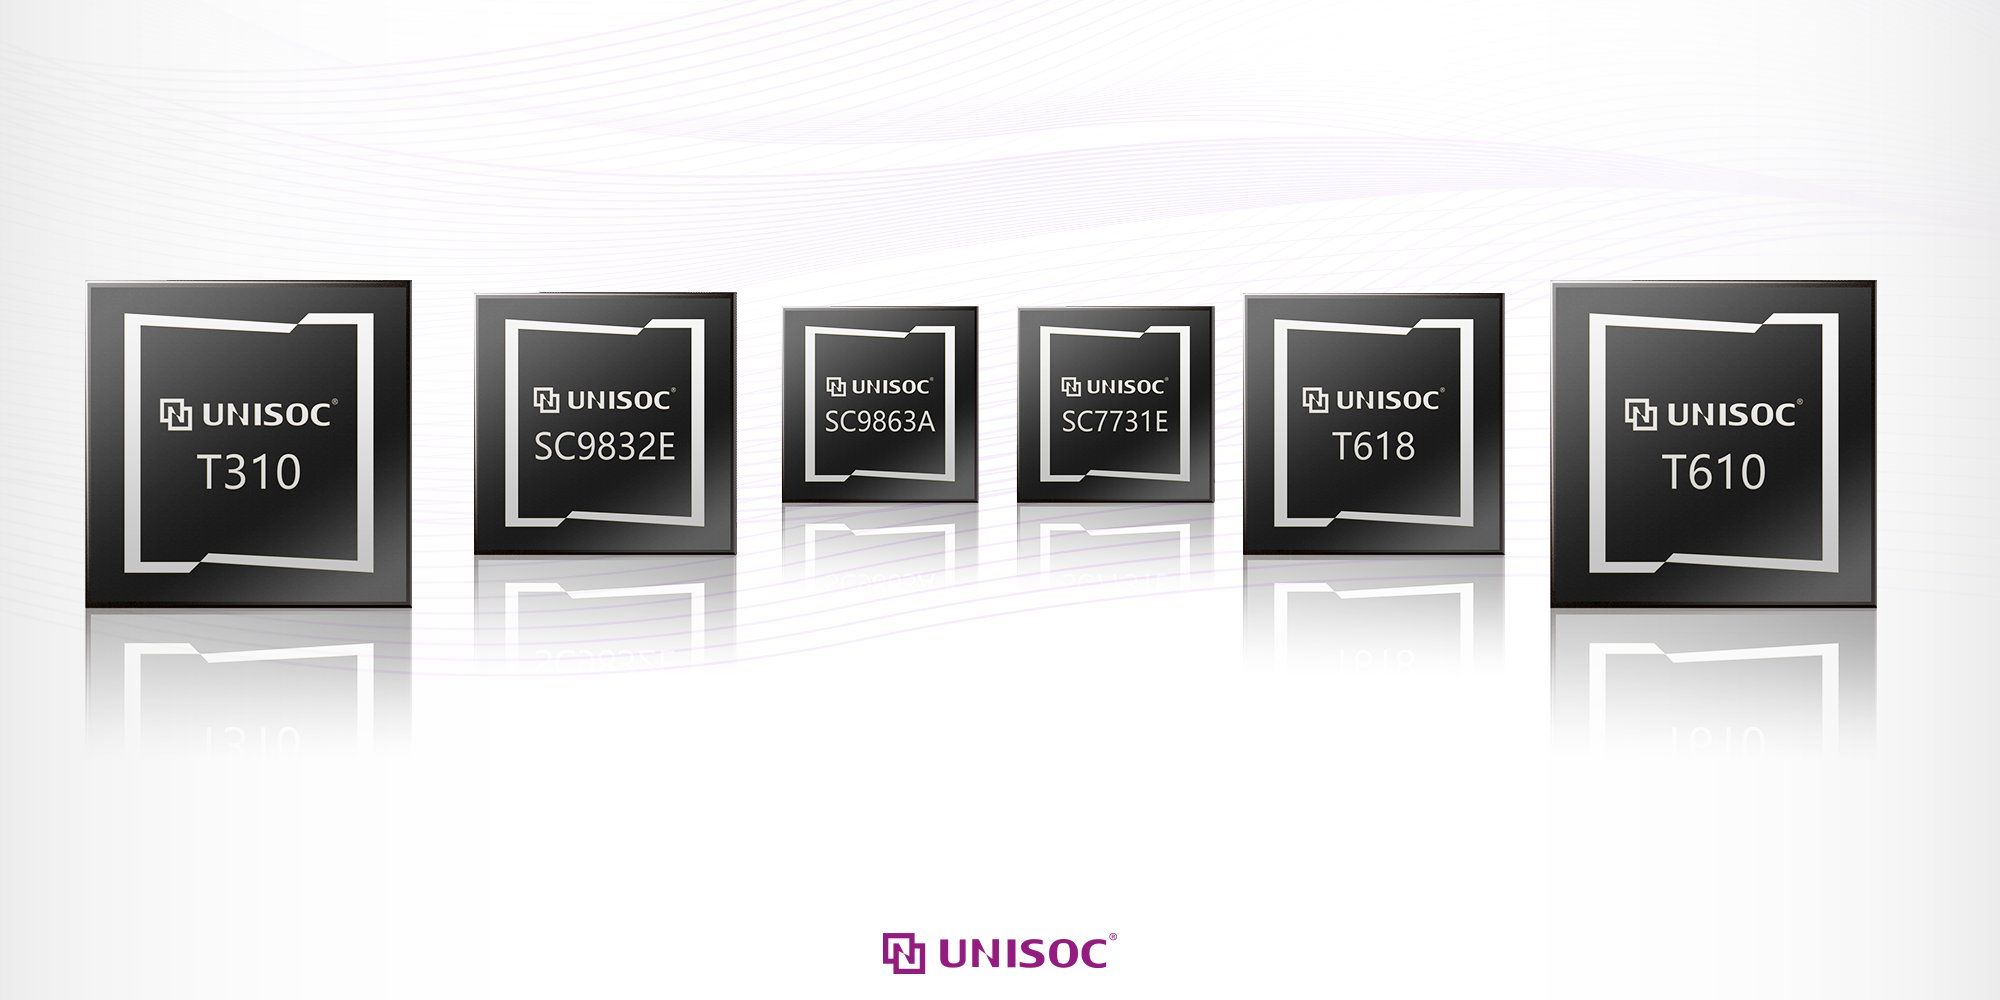 UNISOCが6製品のAndroid 11のサポートを表明、SC9863Aを搭載した製品は本日アップデートを配信